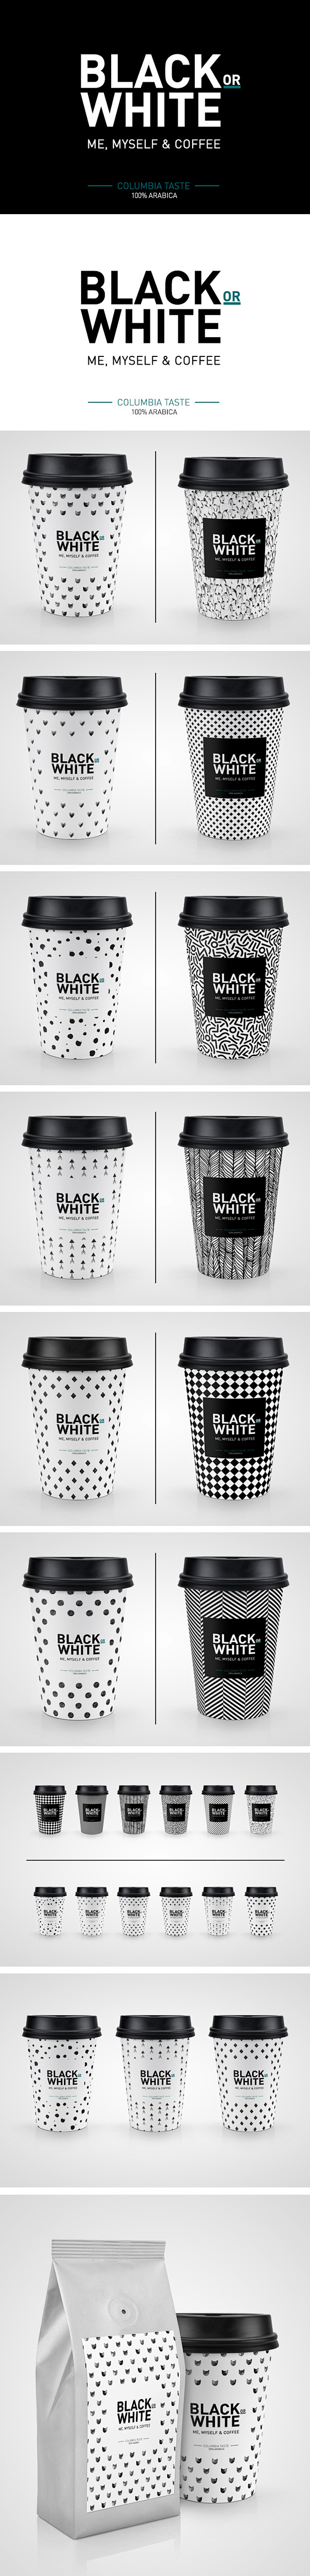 Black or White Coffe...